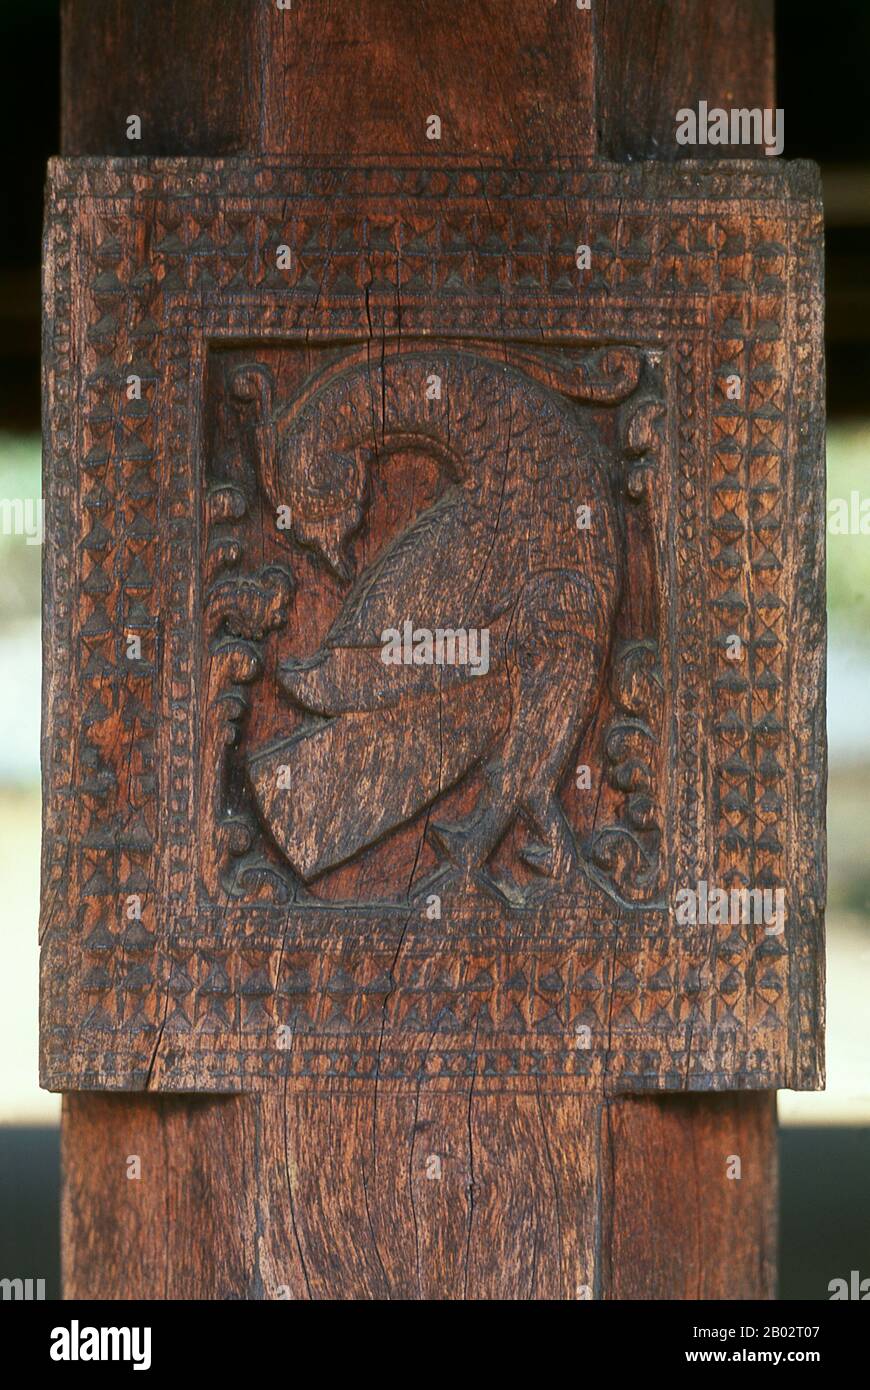 Embekka Devalaya (Embekke-Tempel) wurde von König Vikramabahu III (r. 1357 - 1374). Hauptattraktion sind hier die hervorragend gepflegten Schnitzereien an den Säulen in der Trommlerhalle. Die feinsten der etwa 500 Figuren sind die Tänzerin, ein doppelköpfiger Adler, die Schwäne und die Soldaten. Kandy ist mit rund 170.000 Einwohnern die zweitgrößte Stadt Sri Lankas und ist das kulturelle Zentrum der ganzen Insel. Etwa zwei Jahrhunderte lang (bis zum Jahr 1815) war es die Hauptstadt Sri Lankas. Stockfoto